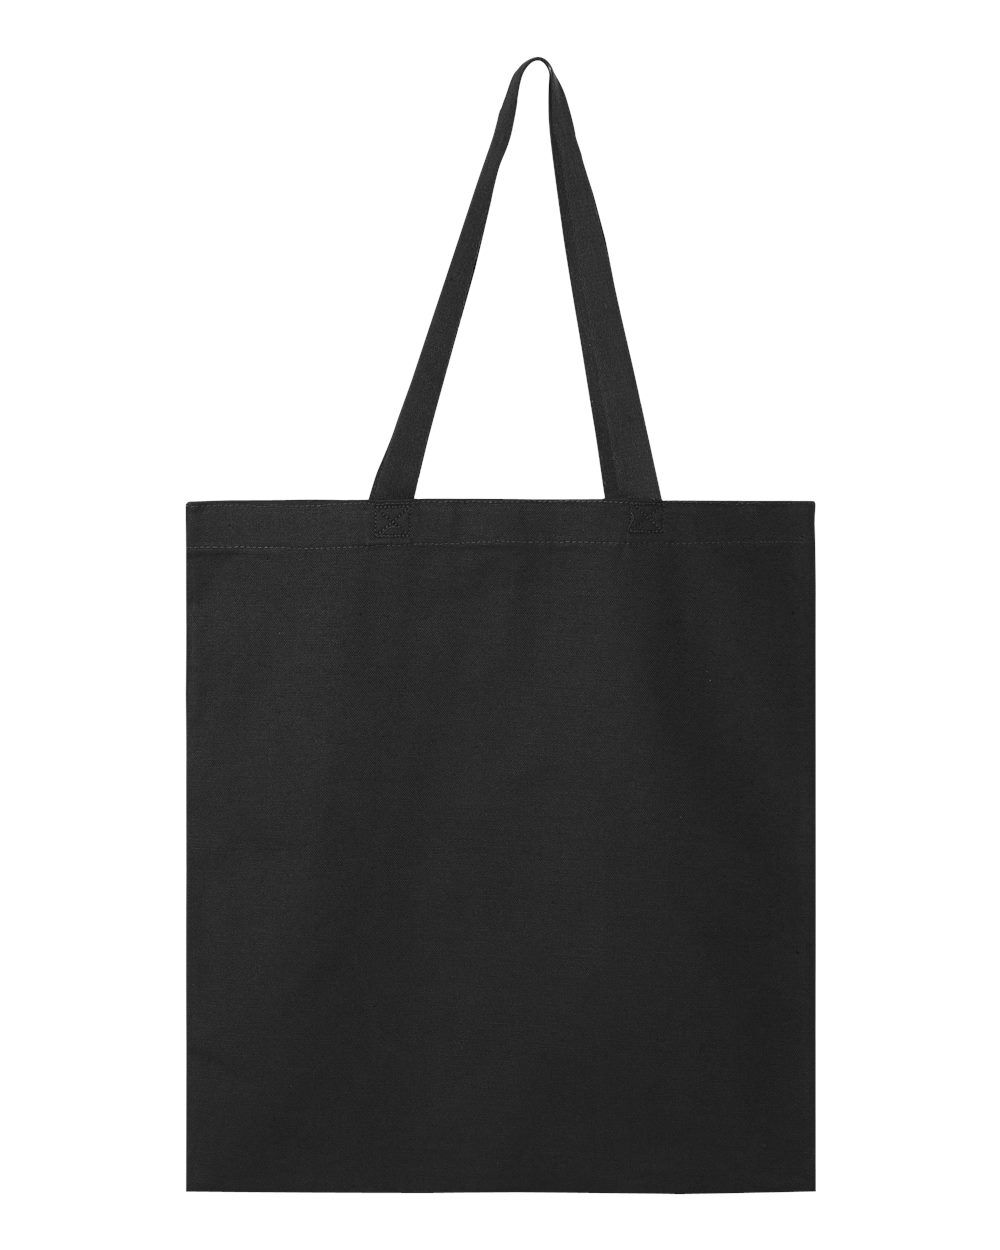 Custom Tote Bag Printing ⋆ Merch38